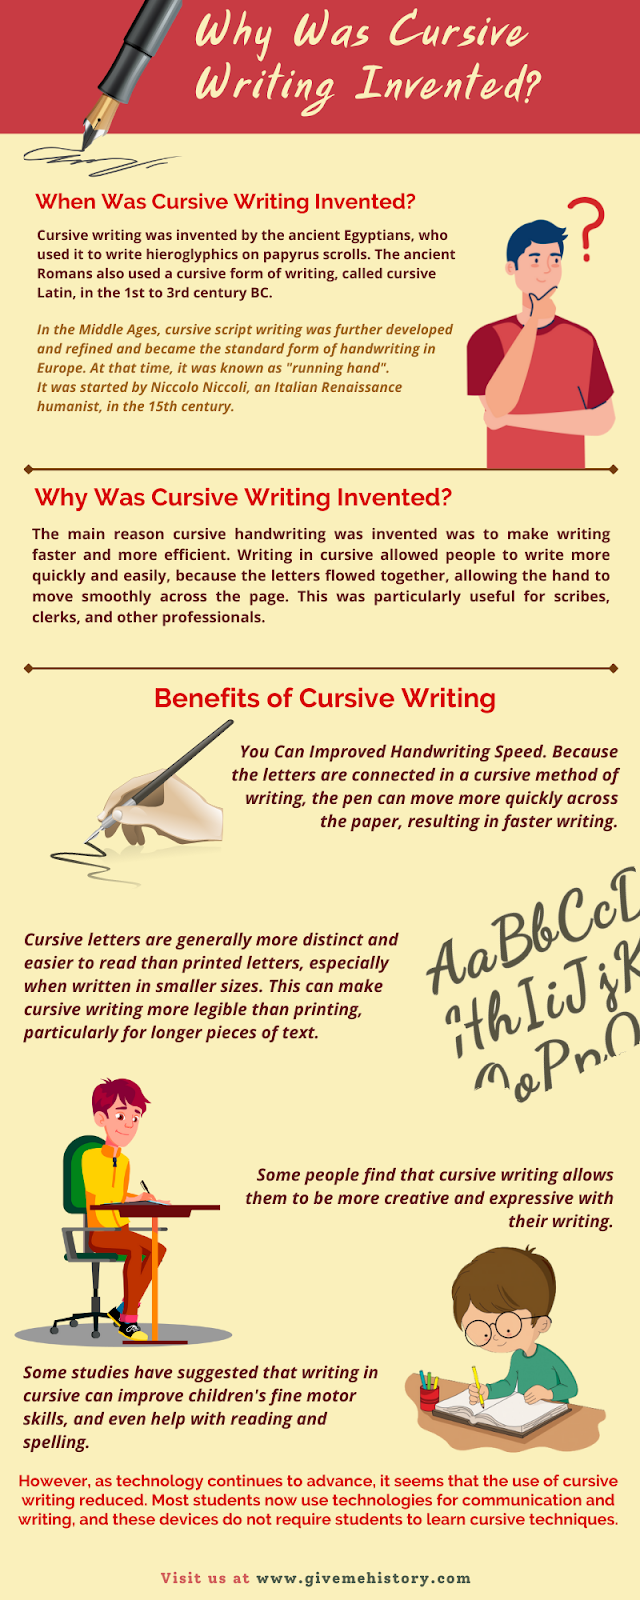 Waarom werd cursief schrijven uitgevonden?